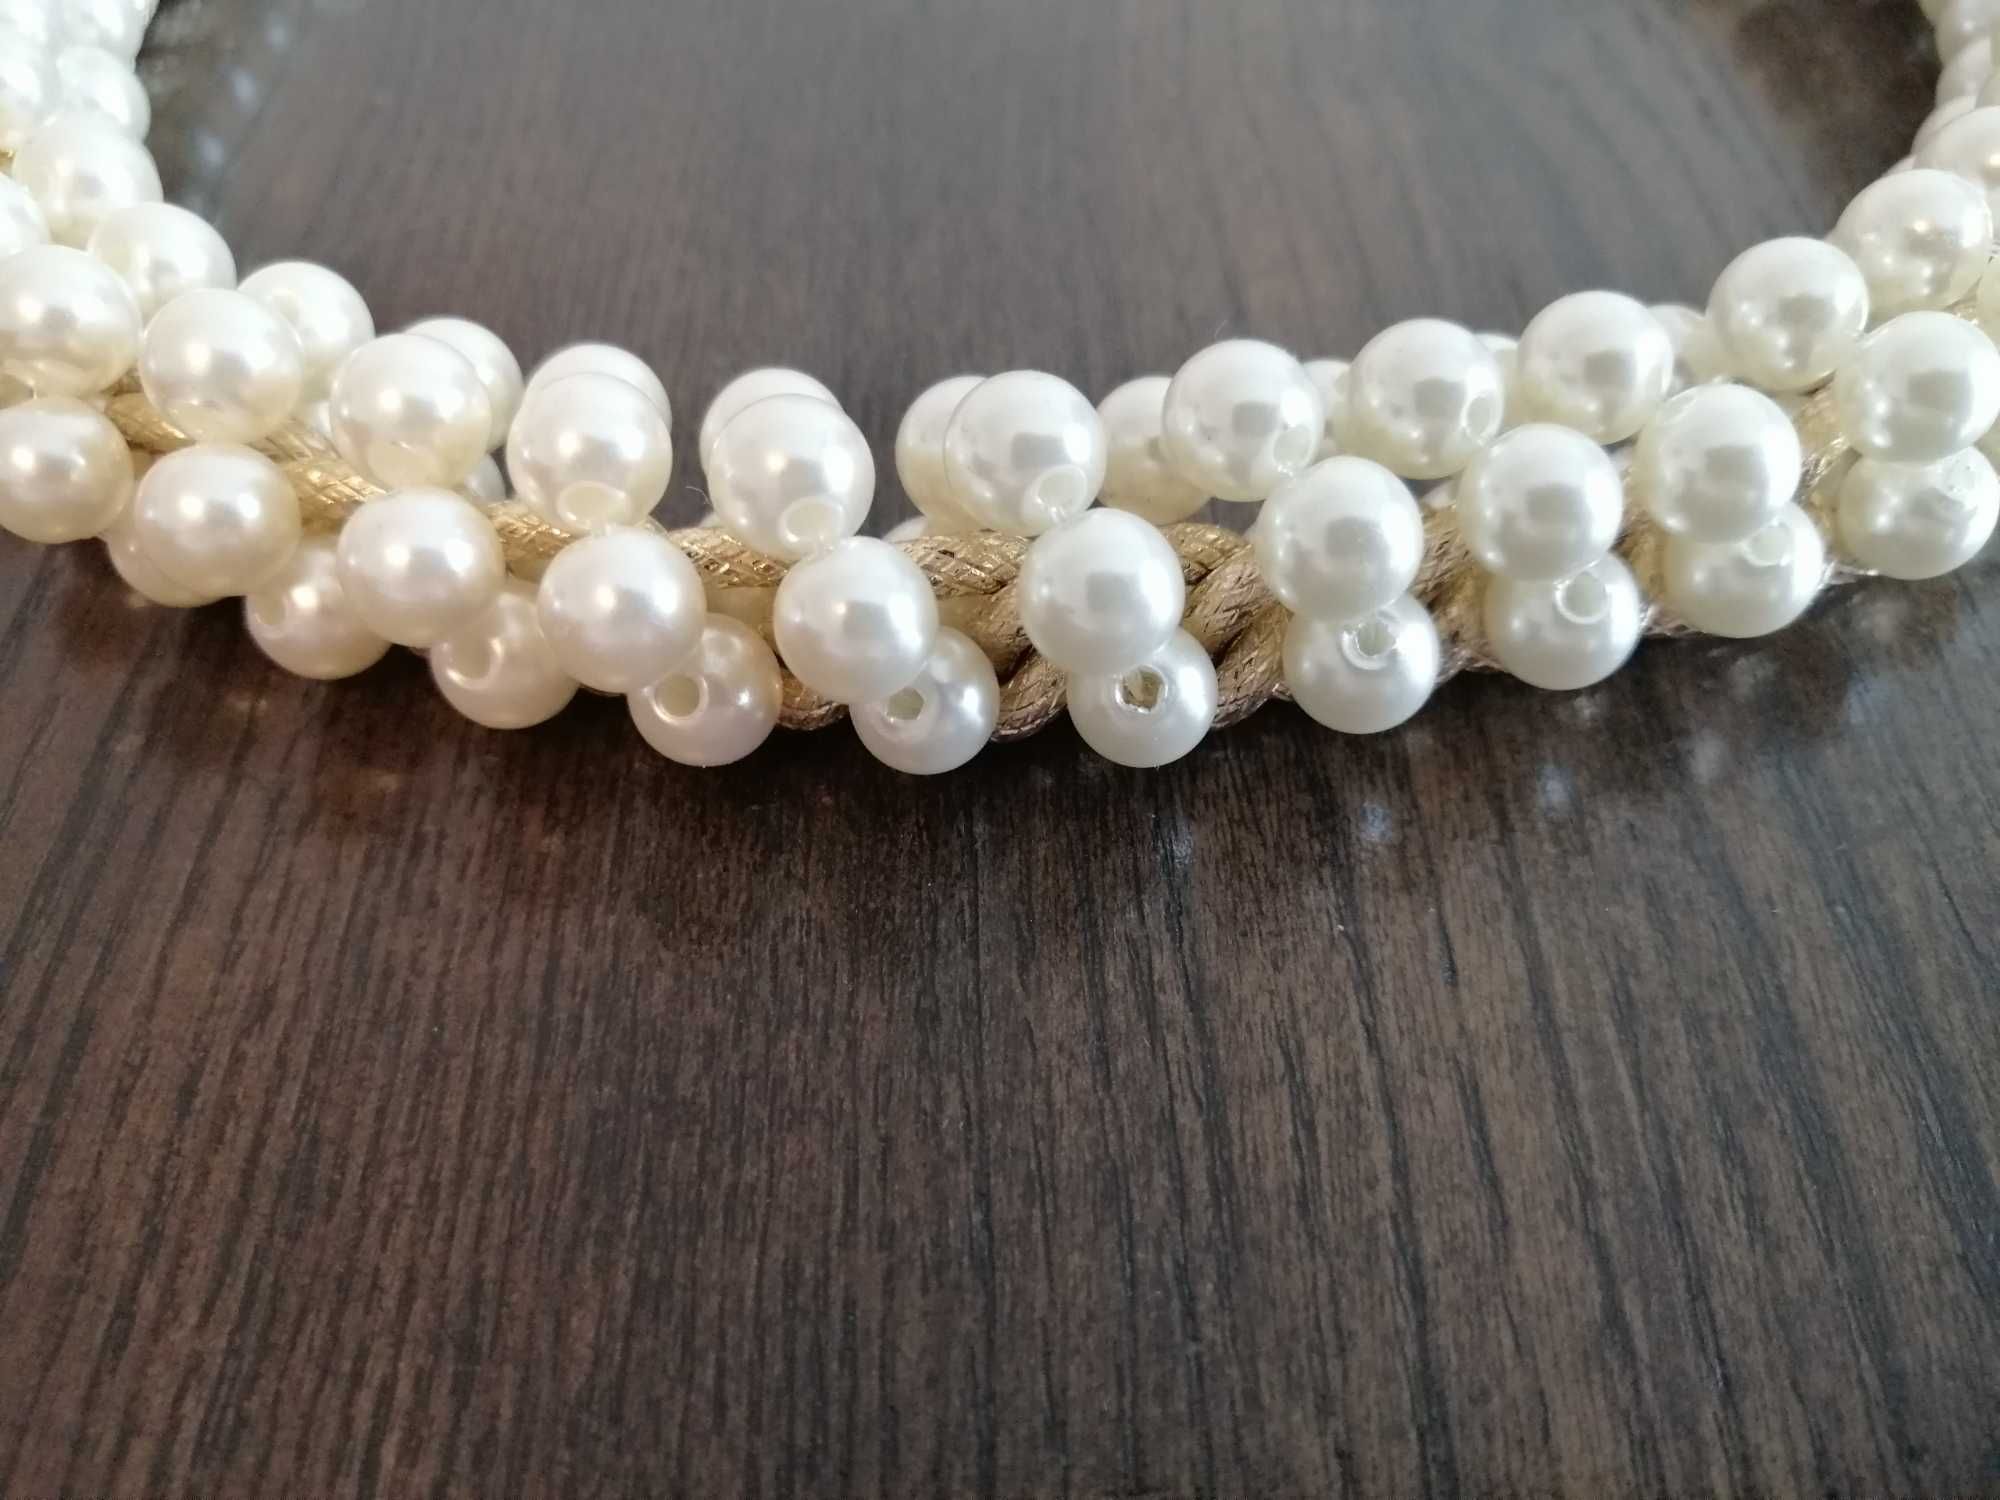 Gruby naszyjnik z perłami